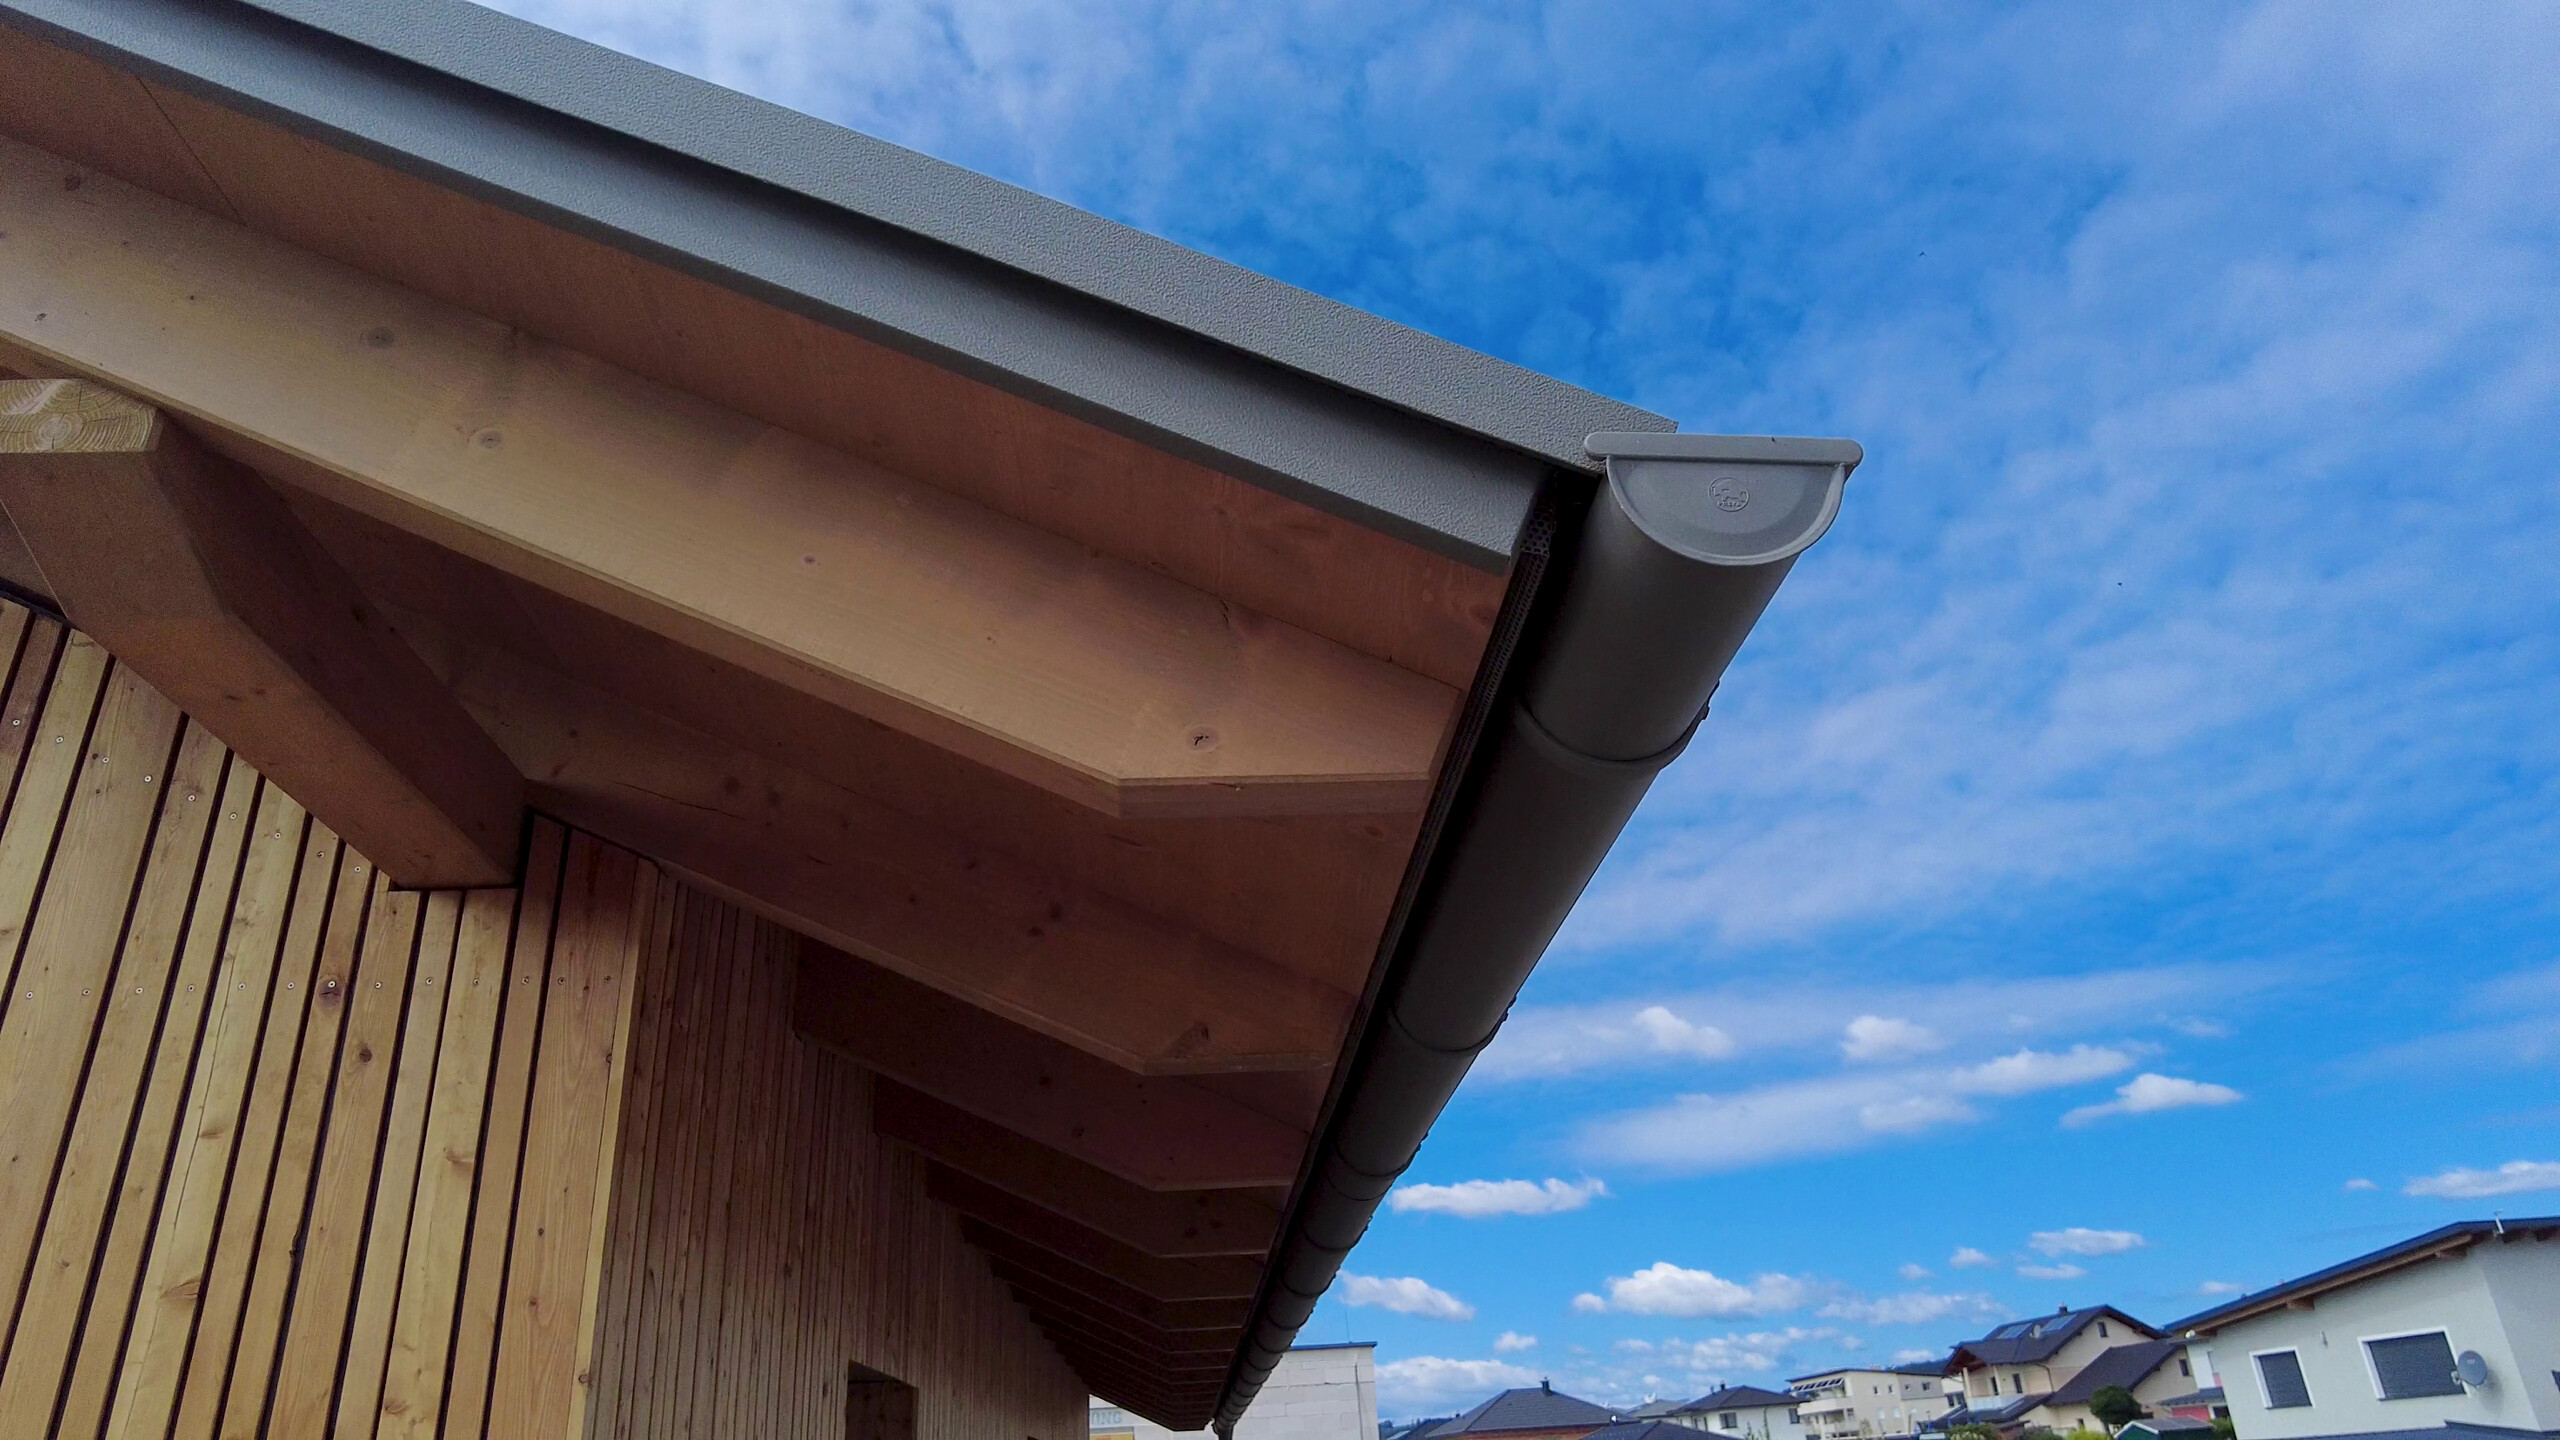 Der Blick unter den Dachvorsprung eines modernen Einfamilienhauses zeigt eine Holzverkleidung und eine Dachrinne von PREFA. Die sichtbaren Balken der Unterkonstruktion sowie die Dachrinne und das Abflussrohr sind in einem passenden Grauton gehalten. Das Foto ist an einem Tag mit leicht bewölktem blauem Himmel aufgenommen.